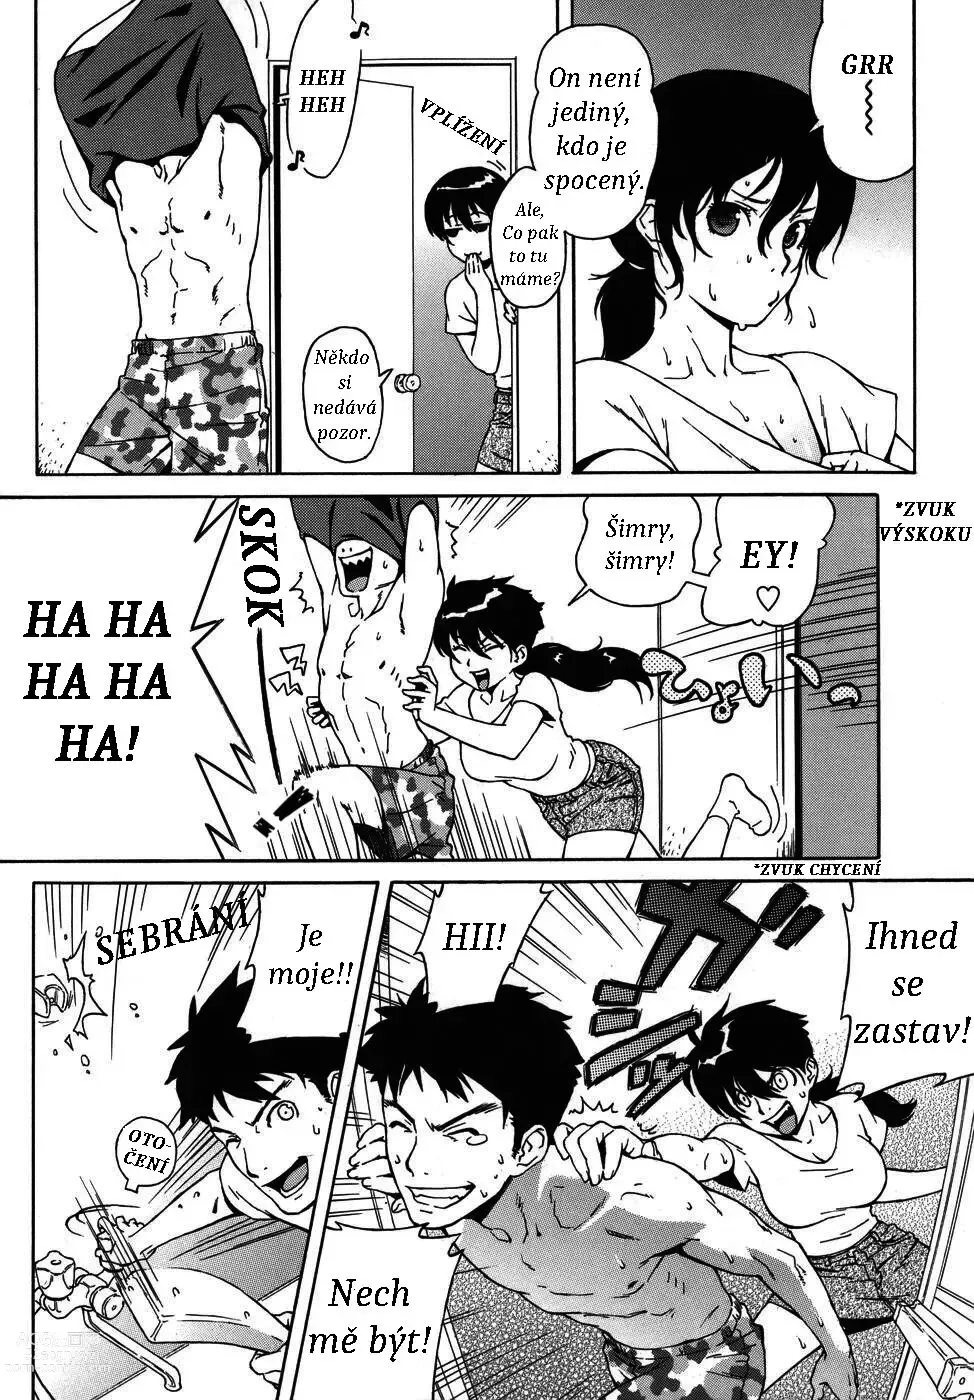 Page 4 of manga Shampoo